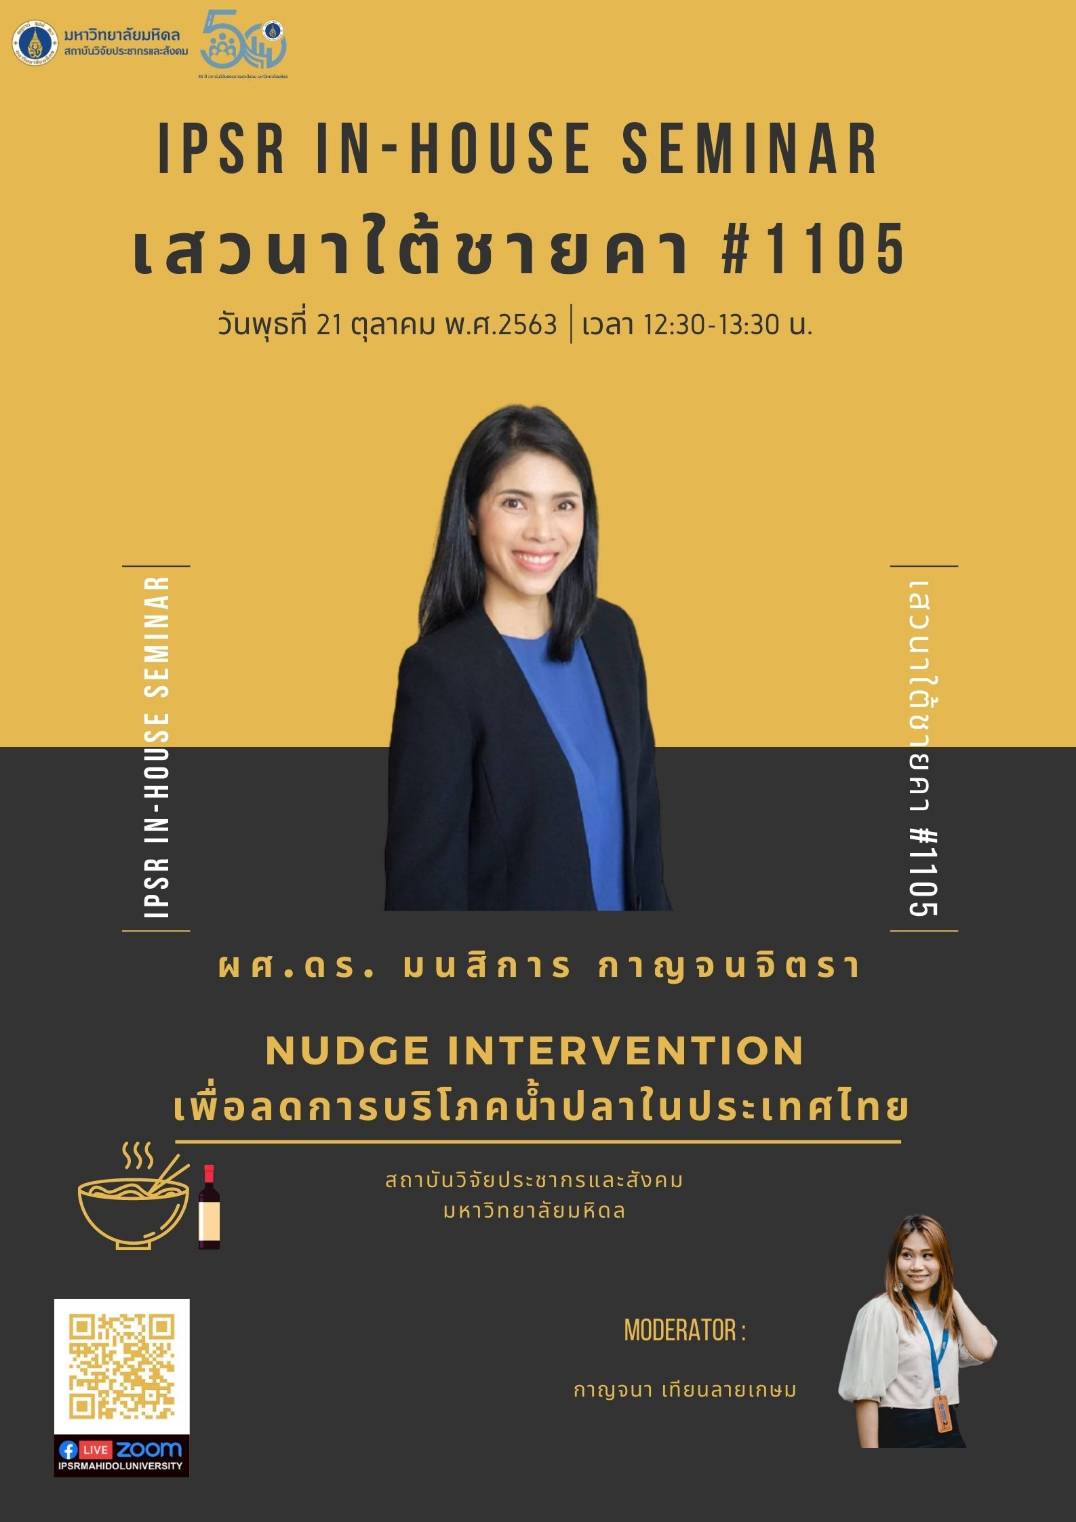 Nudge intervention เพื่อลดการบริโภคน้ำปลาในประเทศไทย